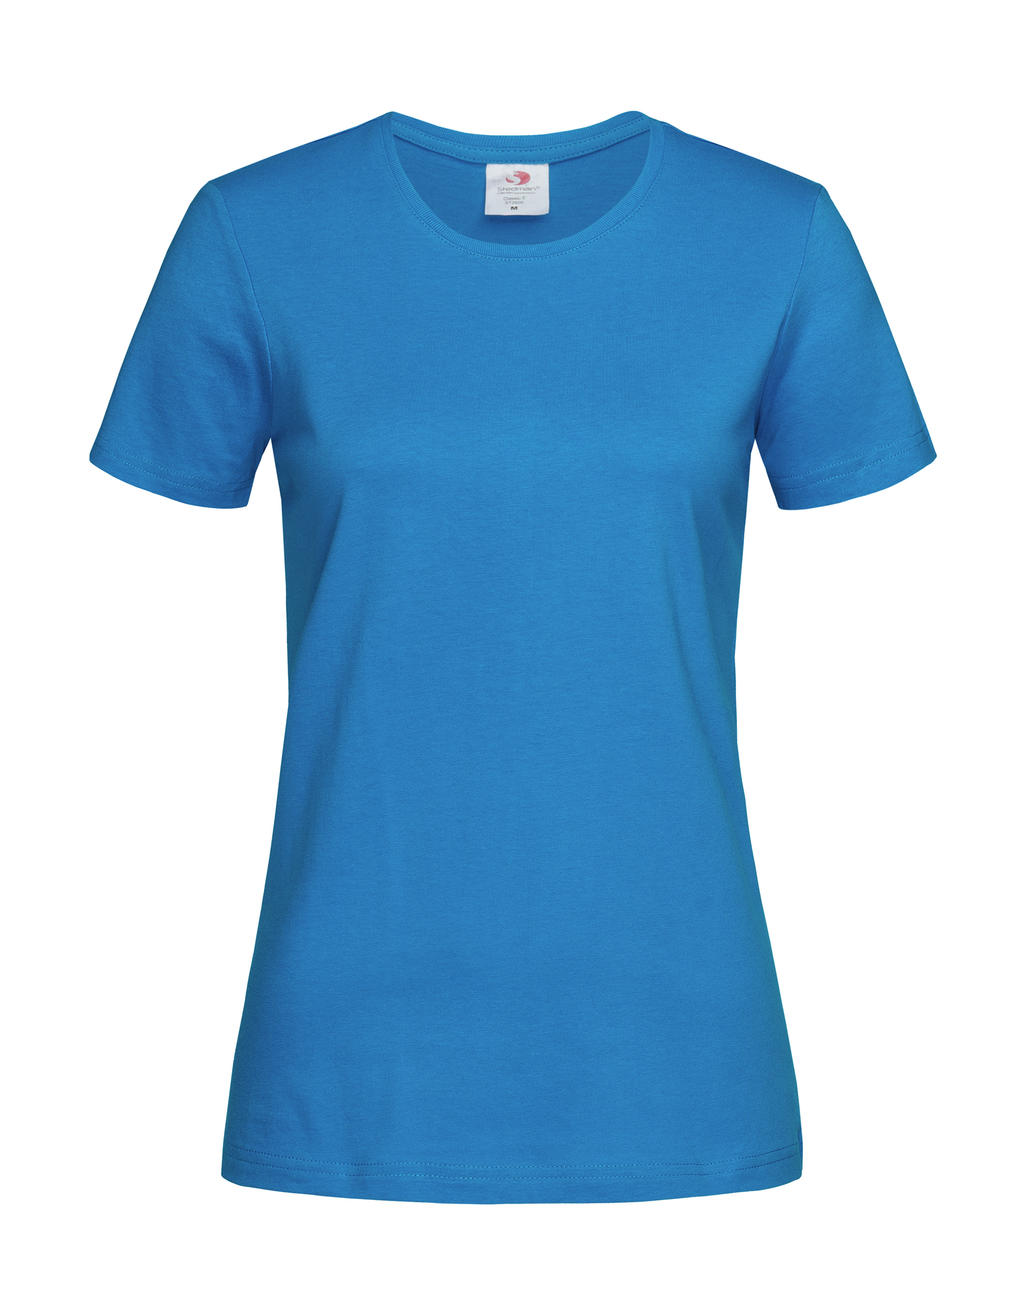 Tričko dámské Stedman Fitted s kulatým výstřihem - ocean blue, L